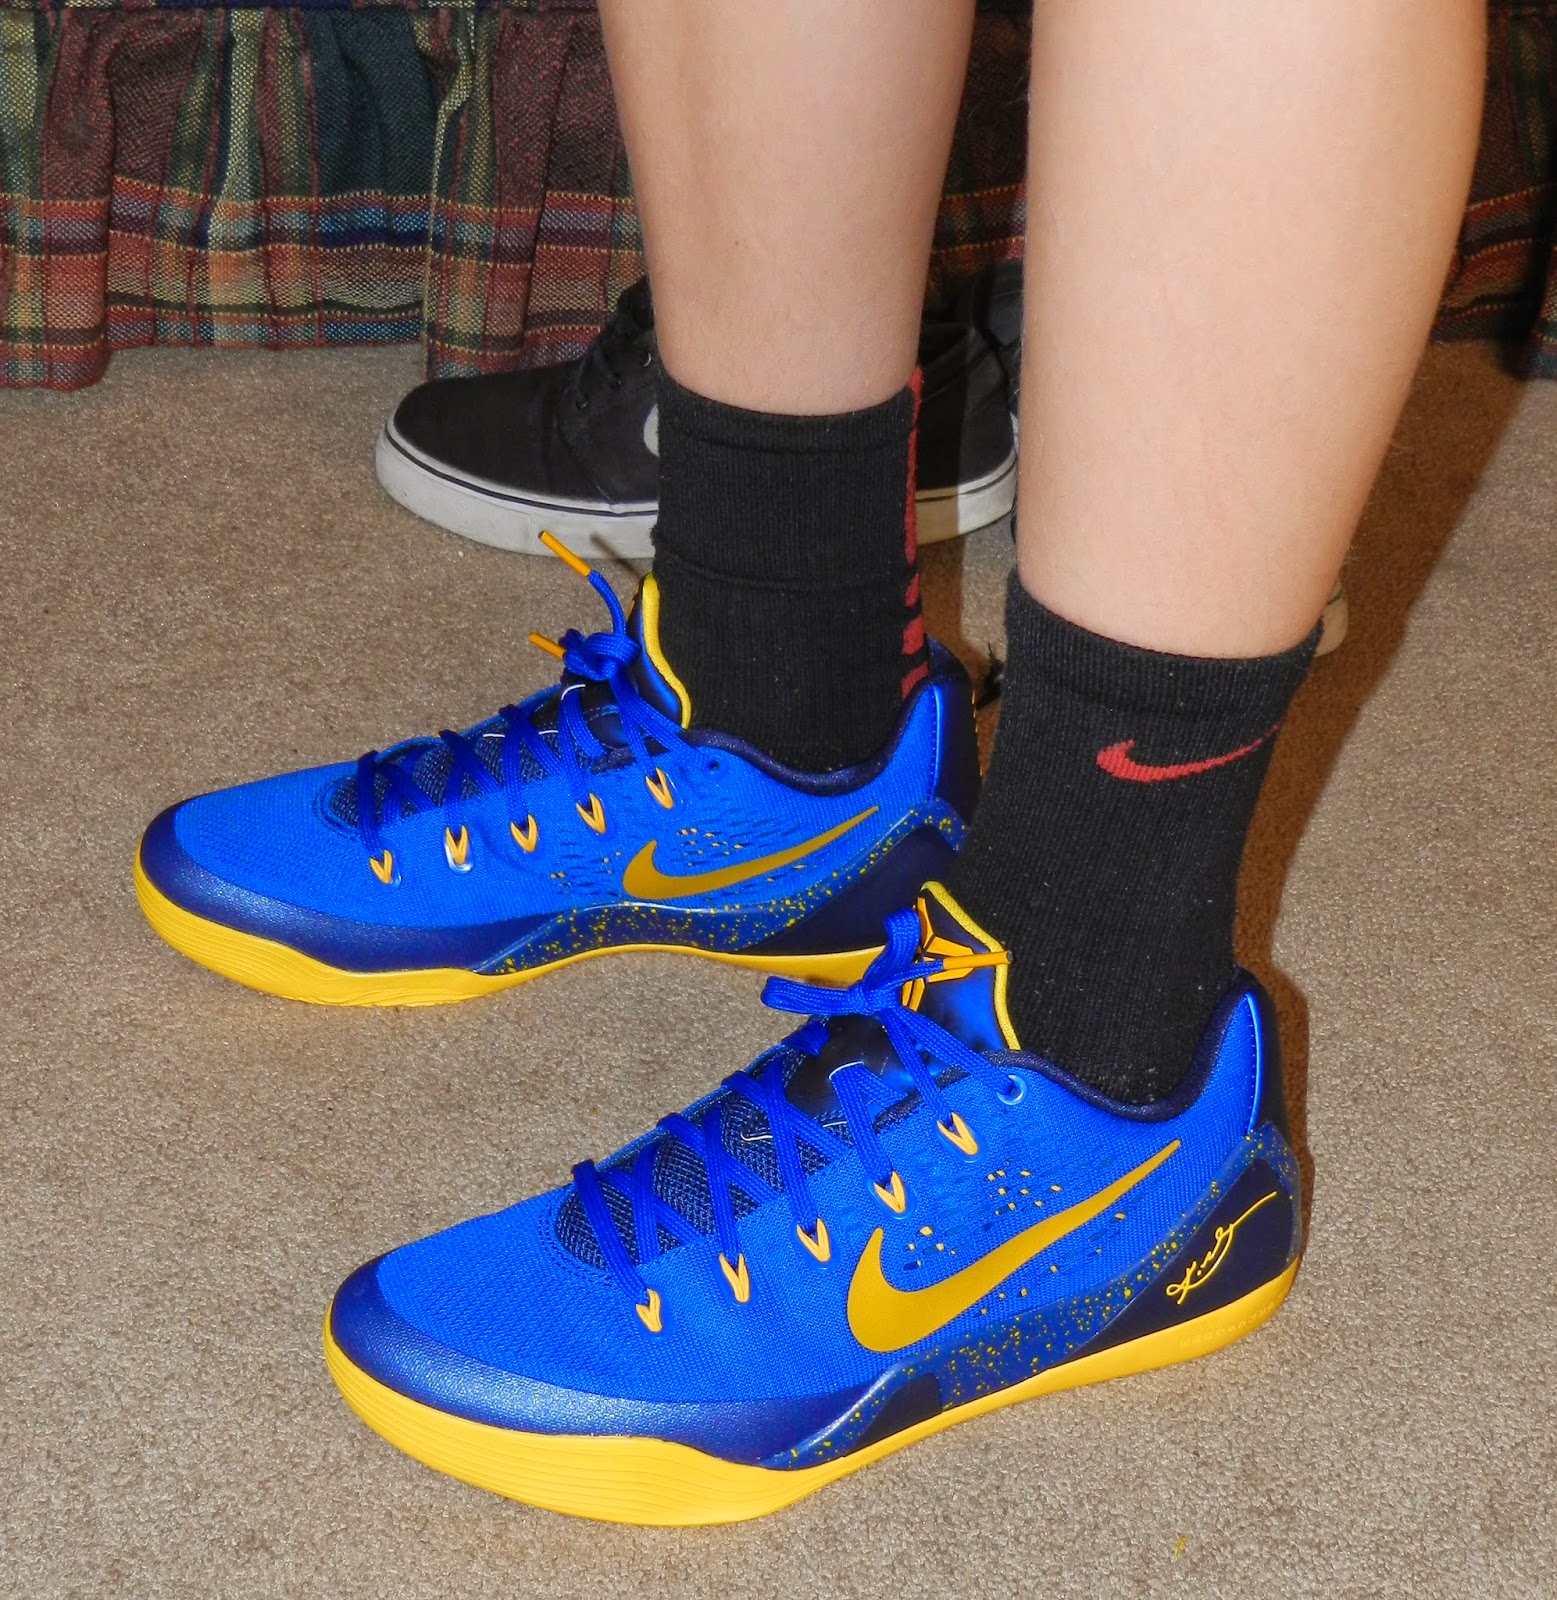 The Arnott Family Blog: New Basketball Shoes